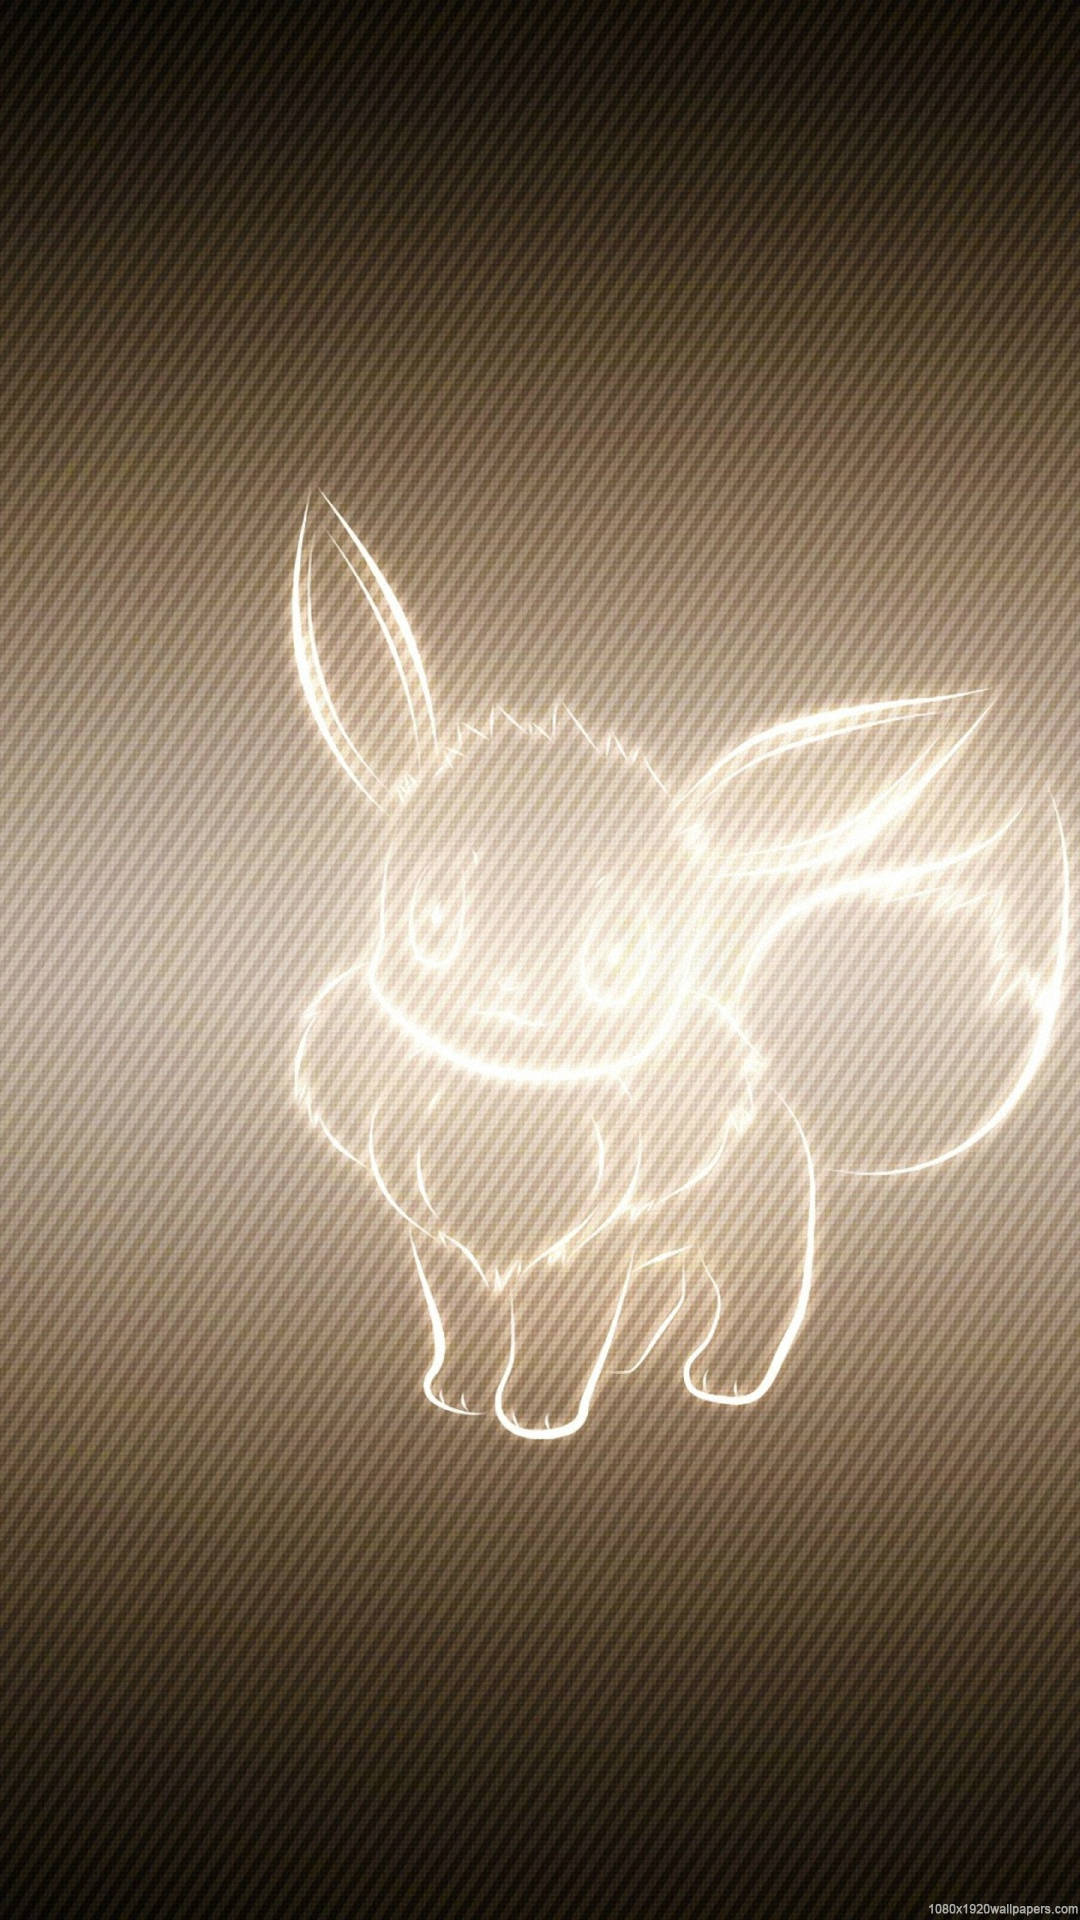 Eevee Glowing Iphone Wallpaper